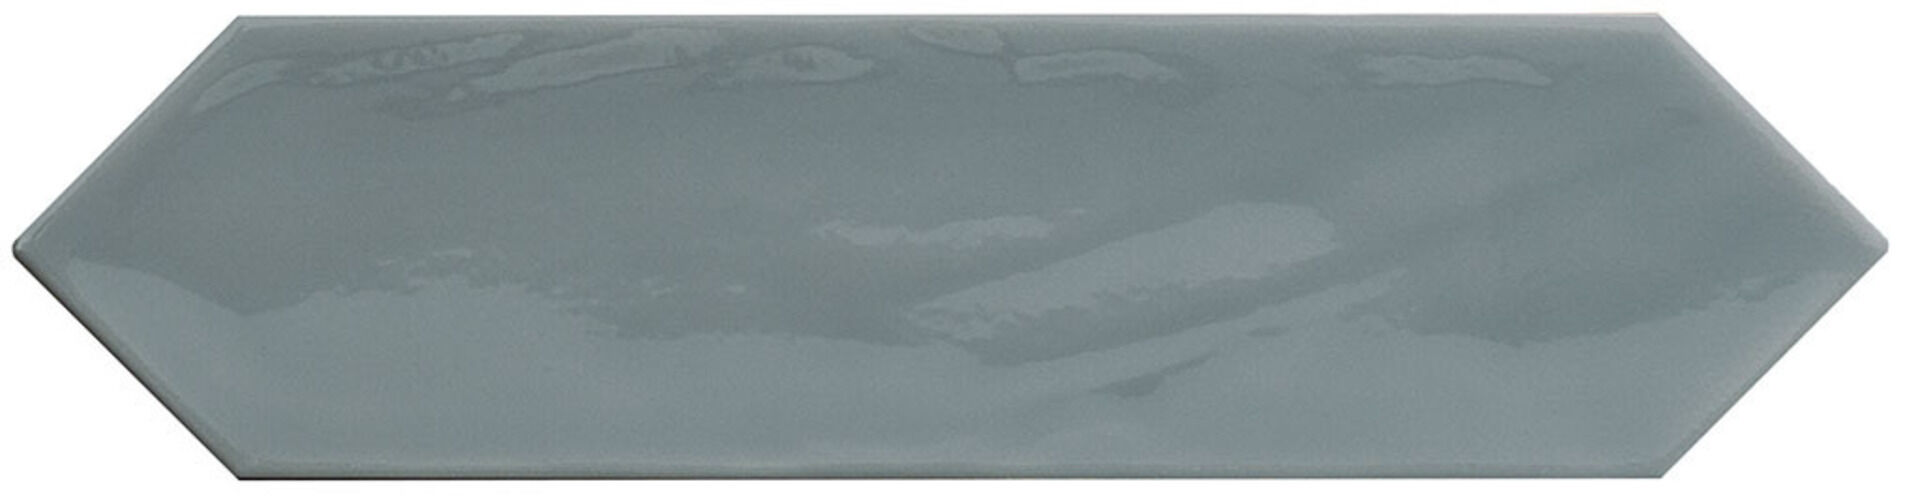 Керамическая плитка KANE PICKET GREY 7,5*30 / коллекция KANE / производитель CIFRE CERAMICA / страна Испания